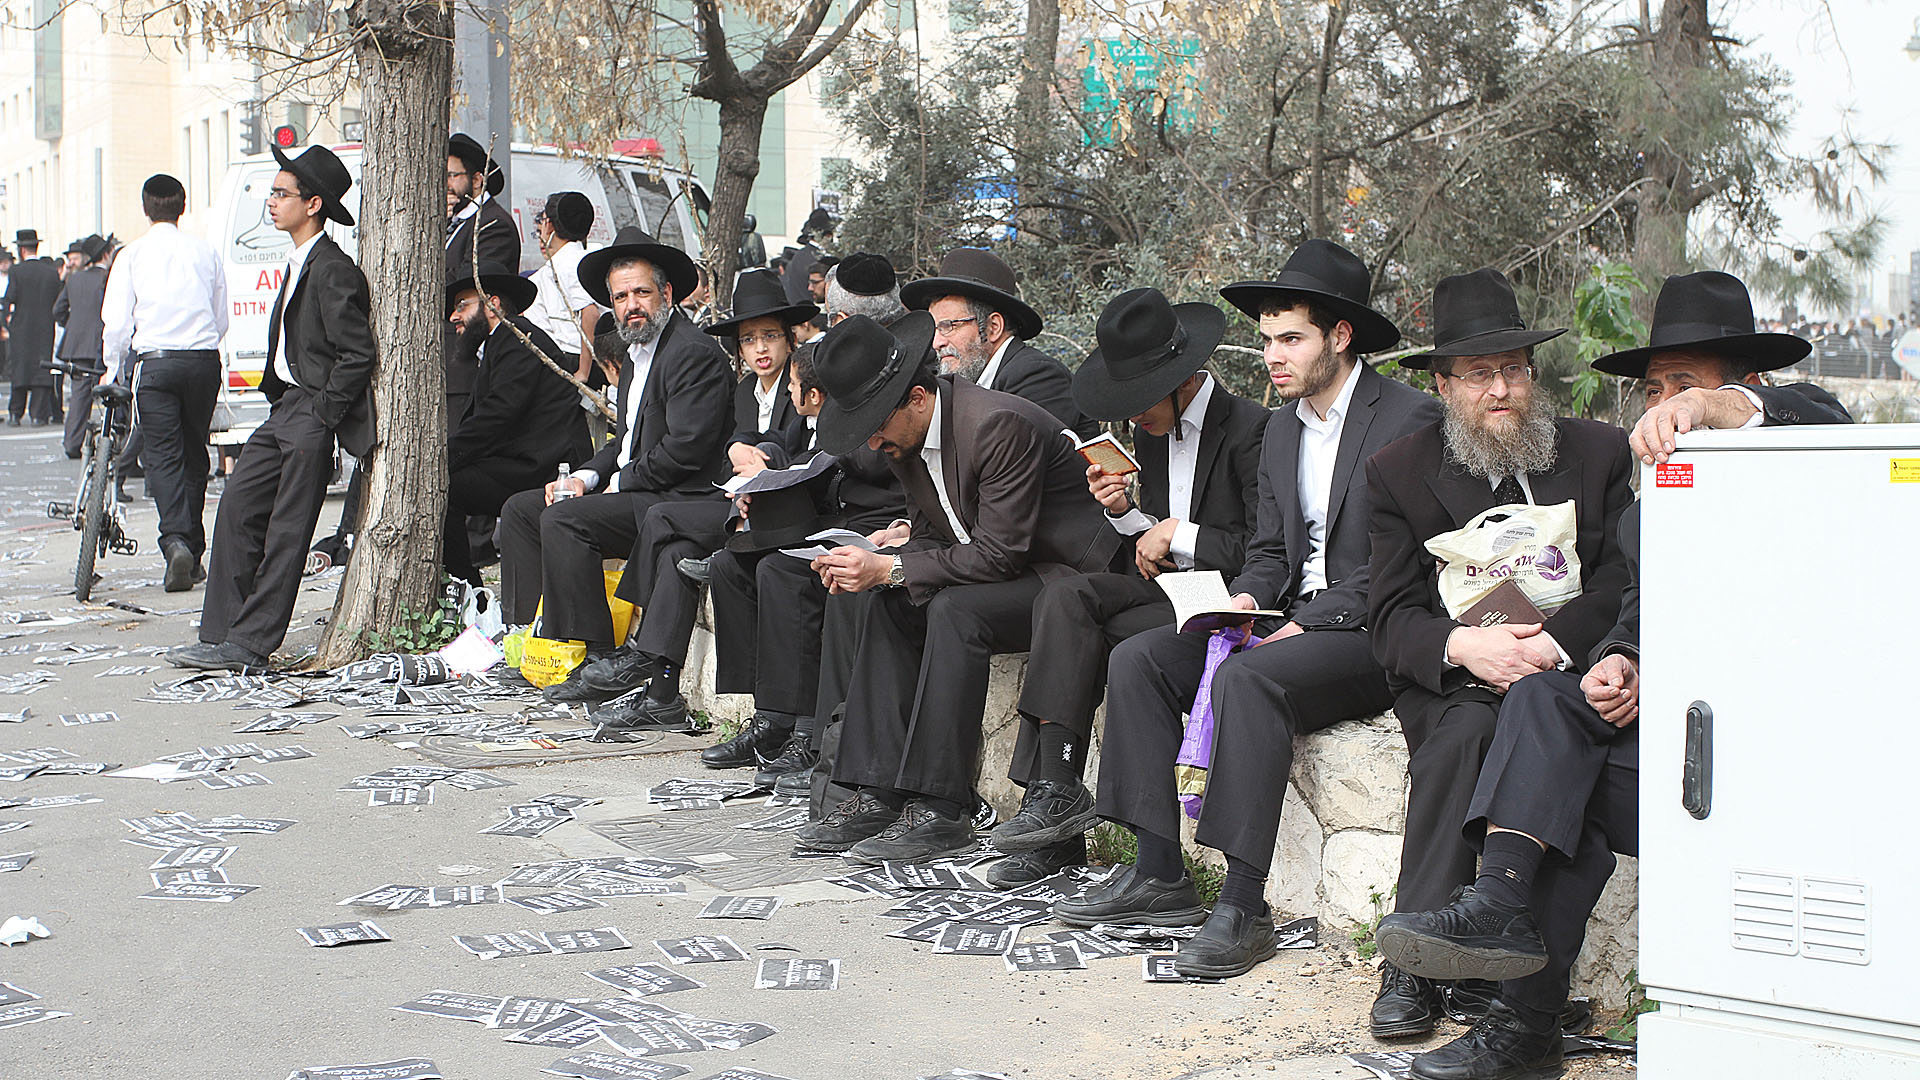 Ultra-orthodoxe Juden in Jerusalem nach einer Demonstration gegen die Wehrpflicht im Jahr 2014